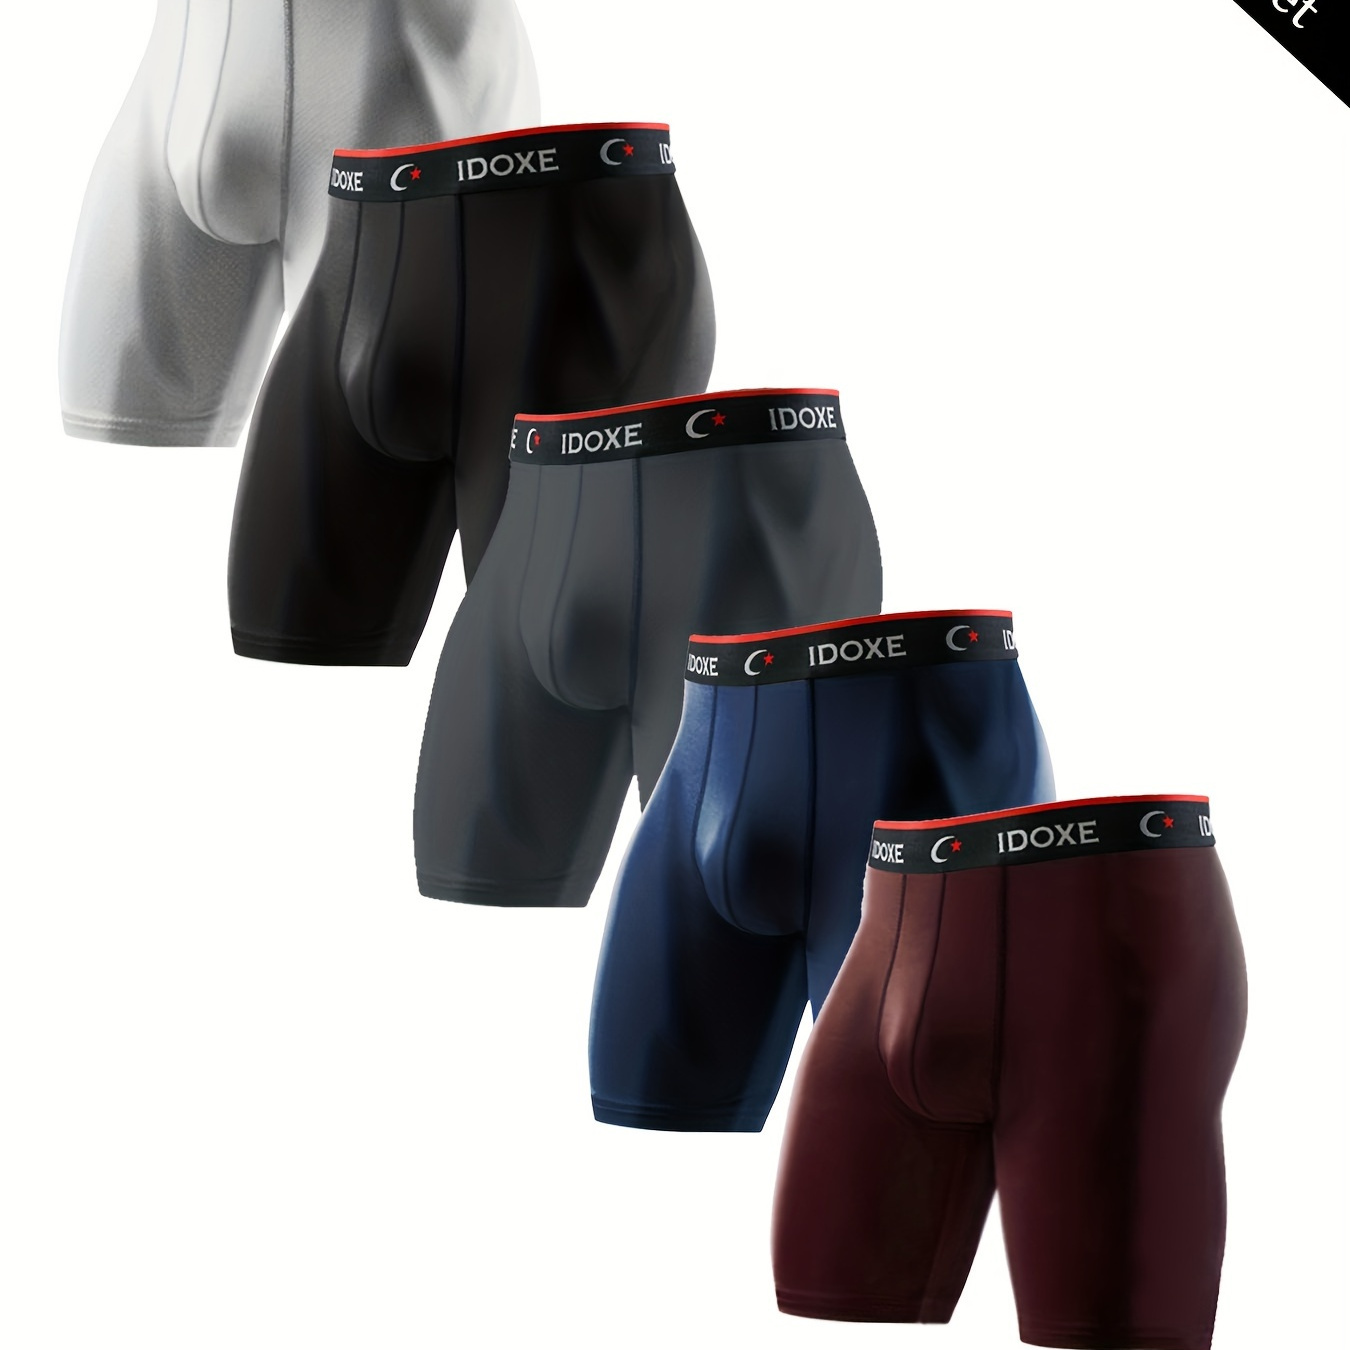 

5pcs Plus Size Men's Underwear New Explosive Men's Boxer Briefs Set Sports Soft Performance Performance Long Style Boxing Shorts